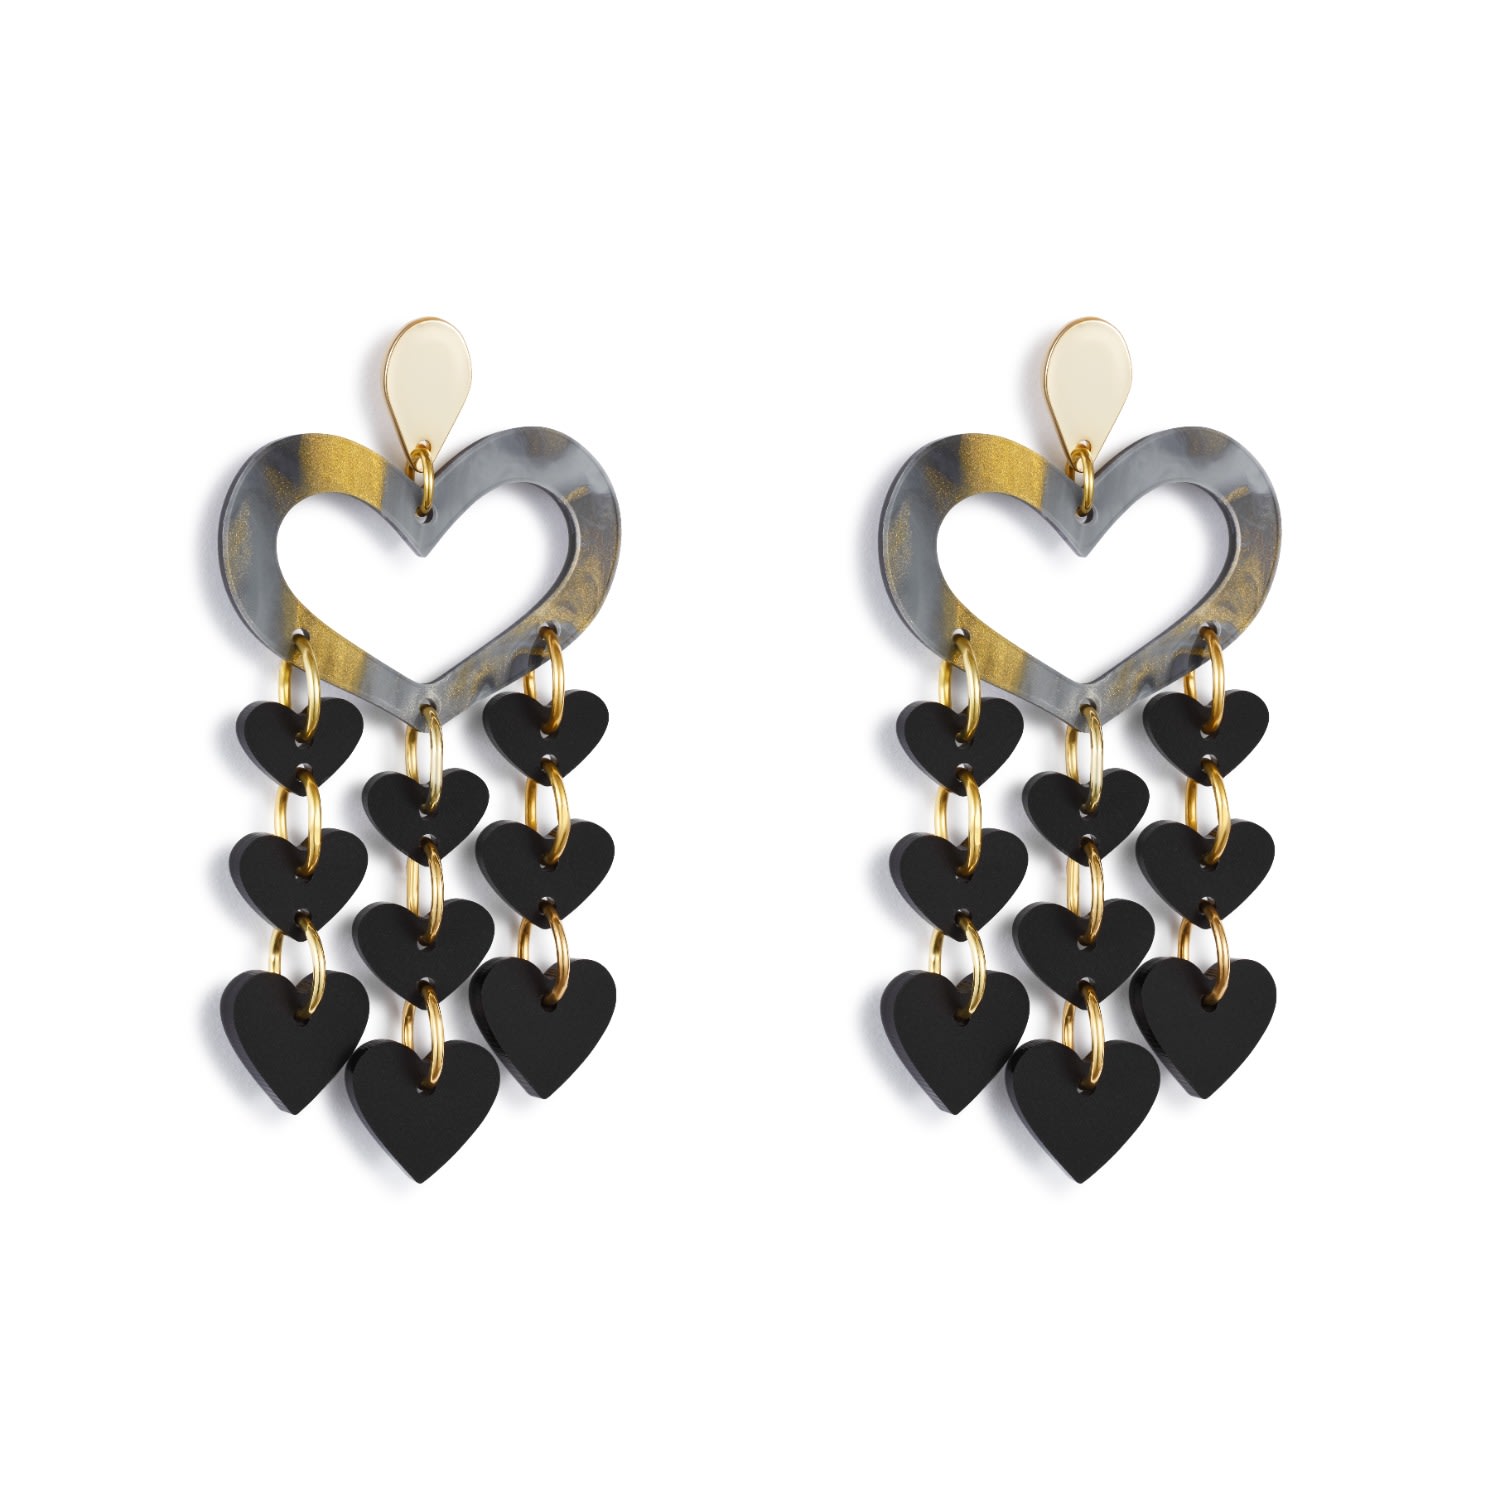 Toolally Women's Black / Gold Heart Chandeliers - Black Swirl